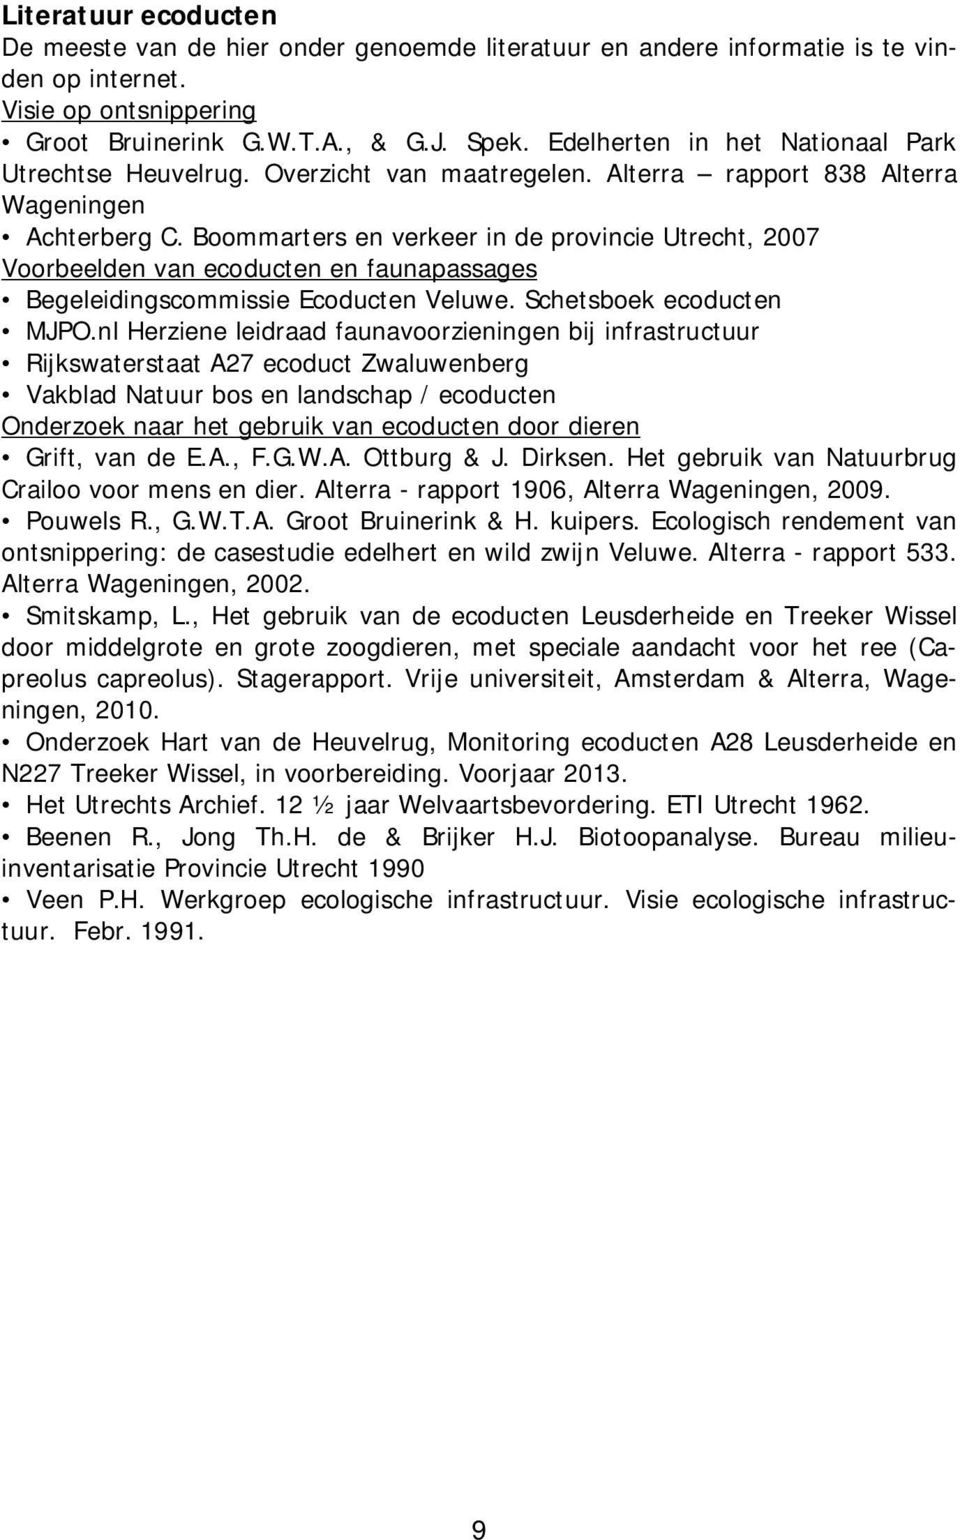 Boommarters en verkeer in de provincie Utrecht, 2007 Voorbeelden van ecoducten en faunapassages Begeleidingscommissie Ecoducten Veluwe. Schetsboek ecoducten MJPO.